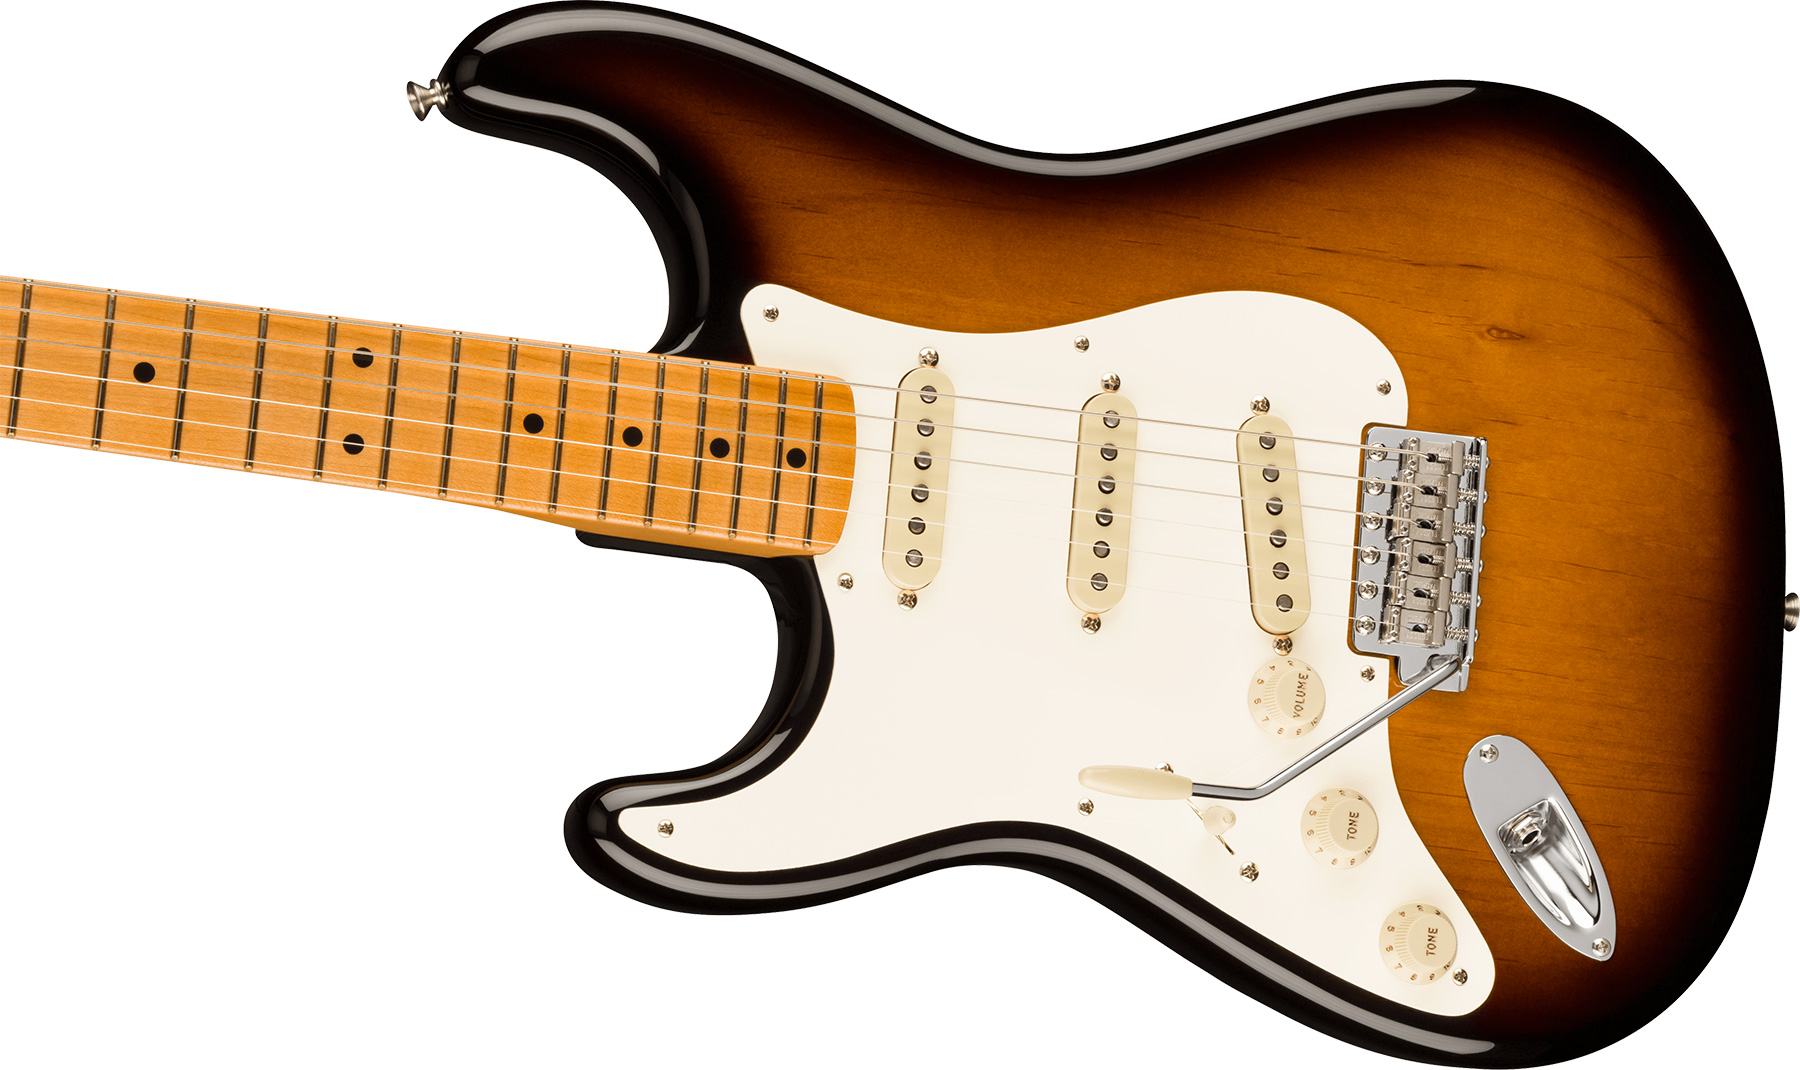 Fender Strat 1957 American Vintage Ii Lh Gaucher Usa 3s Trem Mn - 2-color Sunburst - Guitarra electrica para zurdos - Variation 2